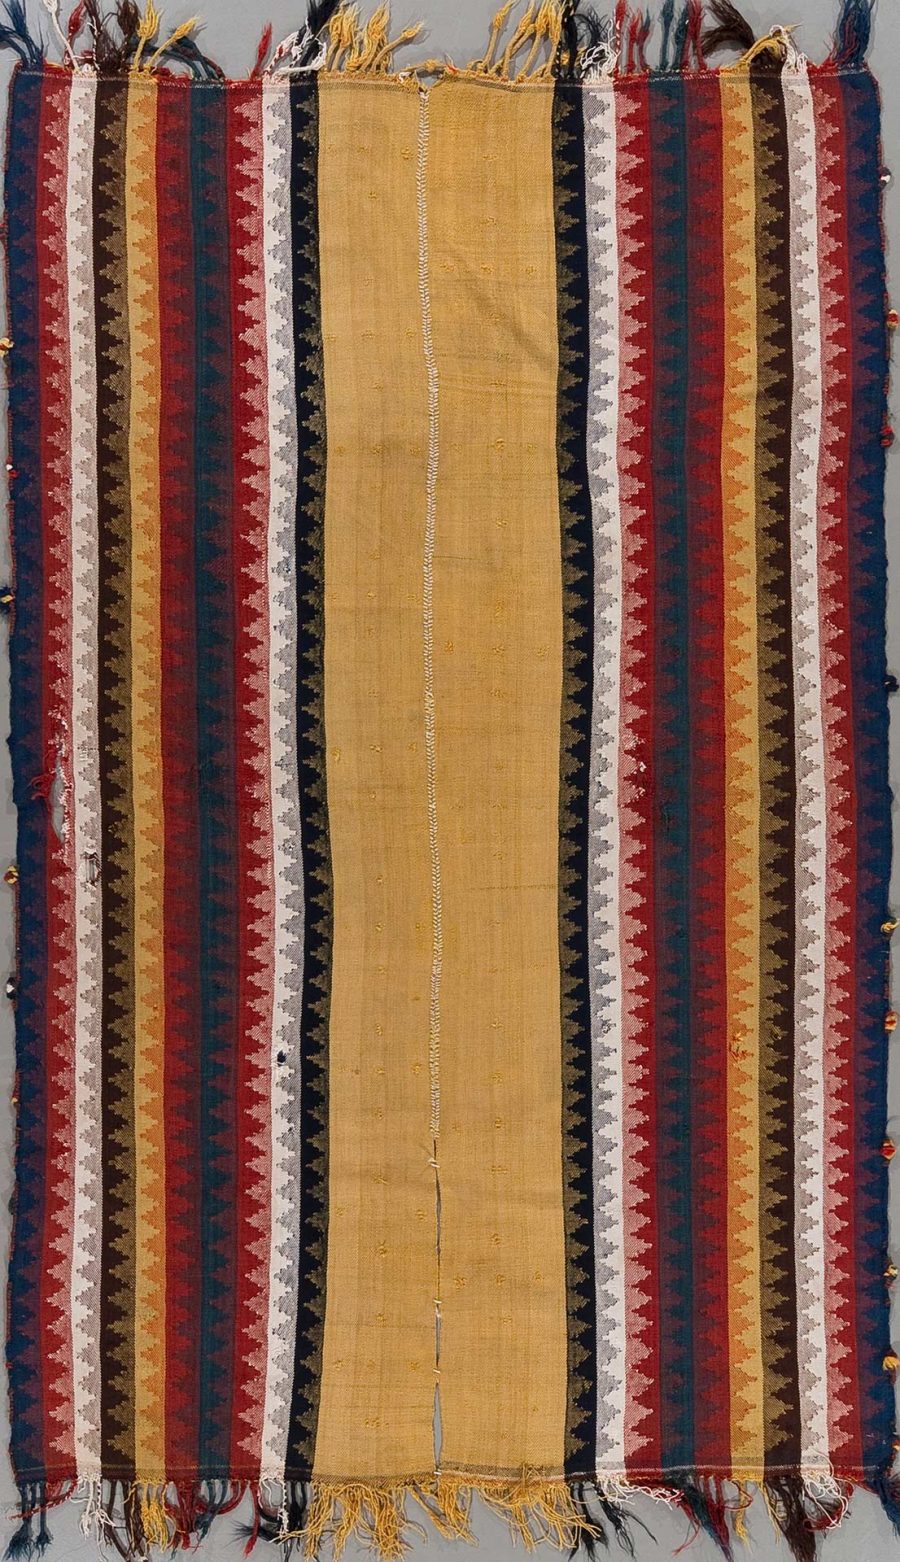 Vertikales Bild eines gewebten traditionellen Teppichs mit vielfarbigen Streifen und Zackenmuster sowie Franzen an den Enden.